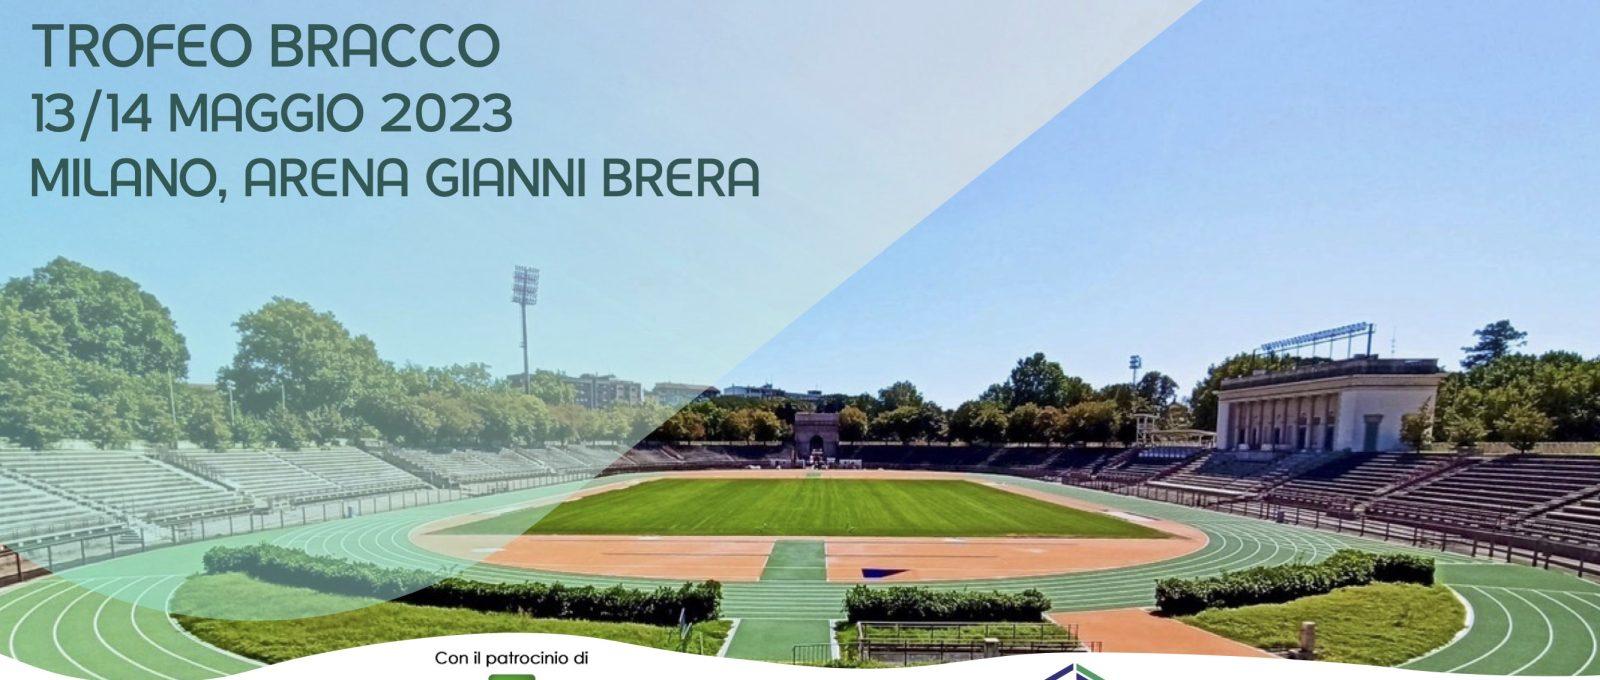 trofeo bracco 1600x680 - CDS ASSOLUTO FEMMINILE TROFEO BRACCO - Milano, Arena Gianni Brera 13/14 maggio 2023